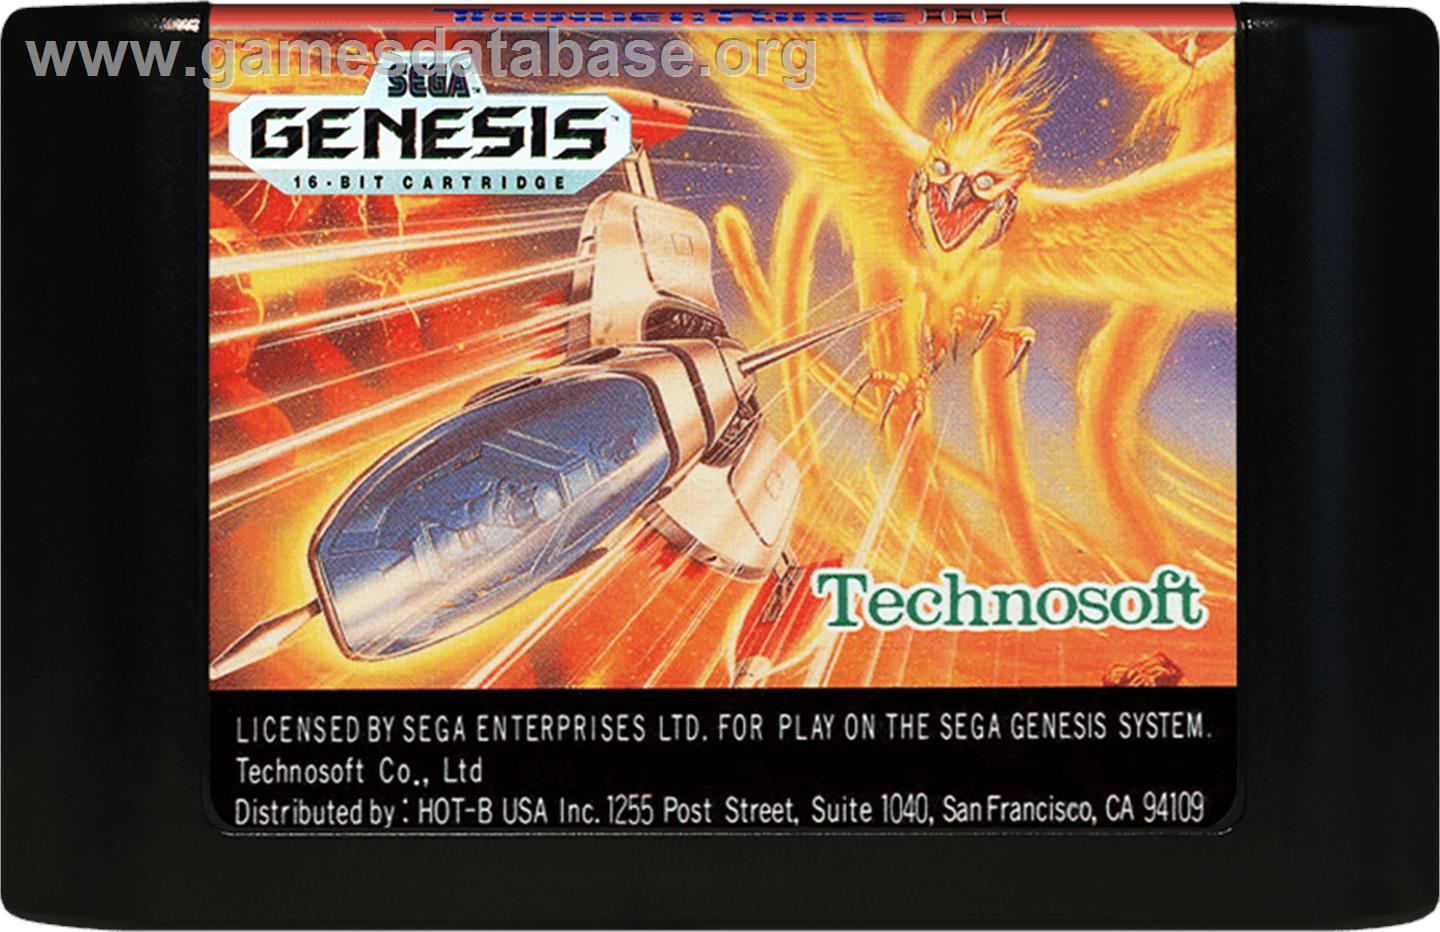 Thunder Force III - Sega Genesis - Artwork - Cartridge